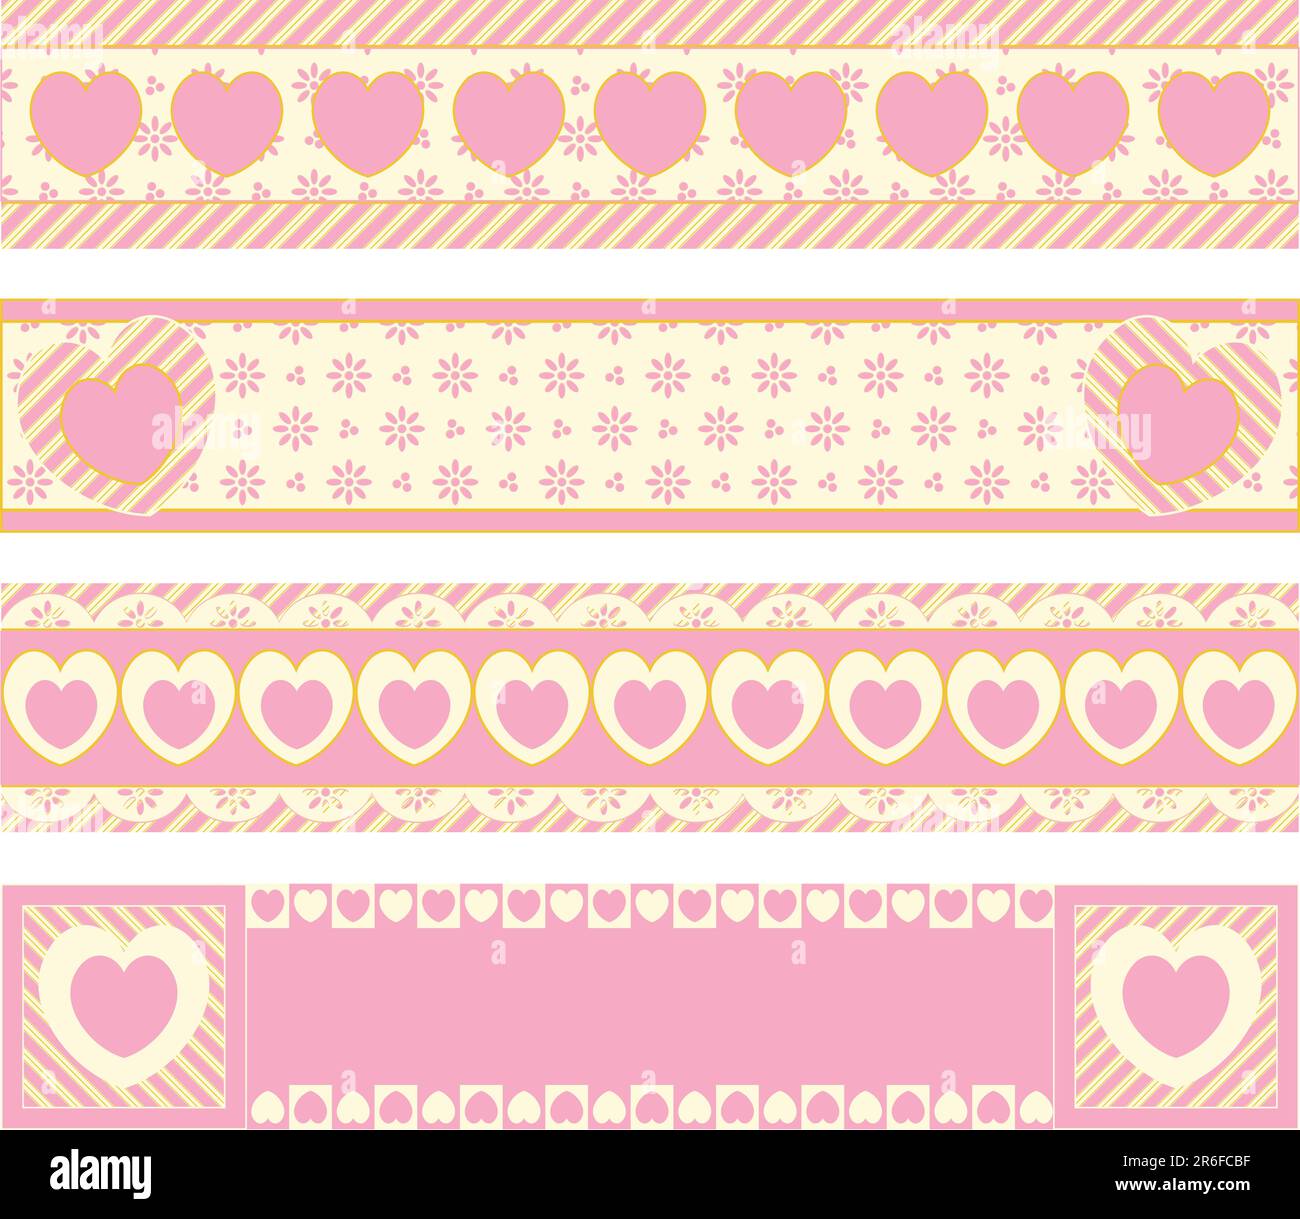 Quatre bordures vectorielles avec coeurs en oeillets victoriens et rayures roses, dorées et ecru. Illustration de Vecteur